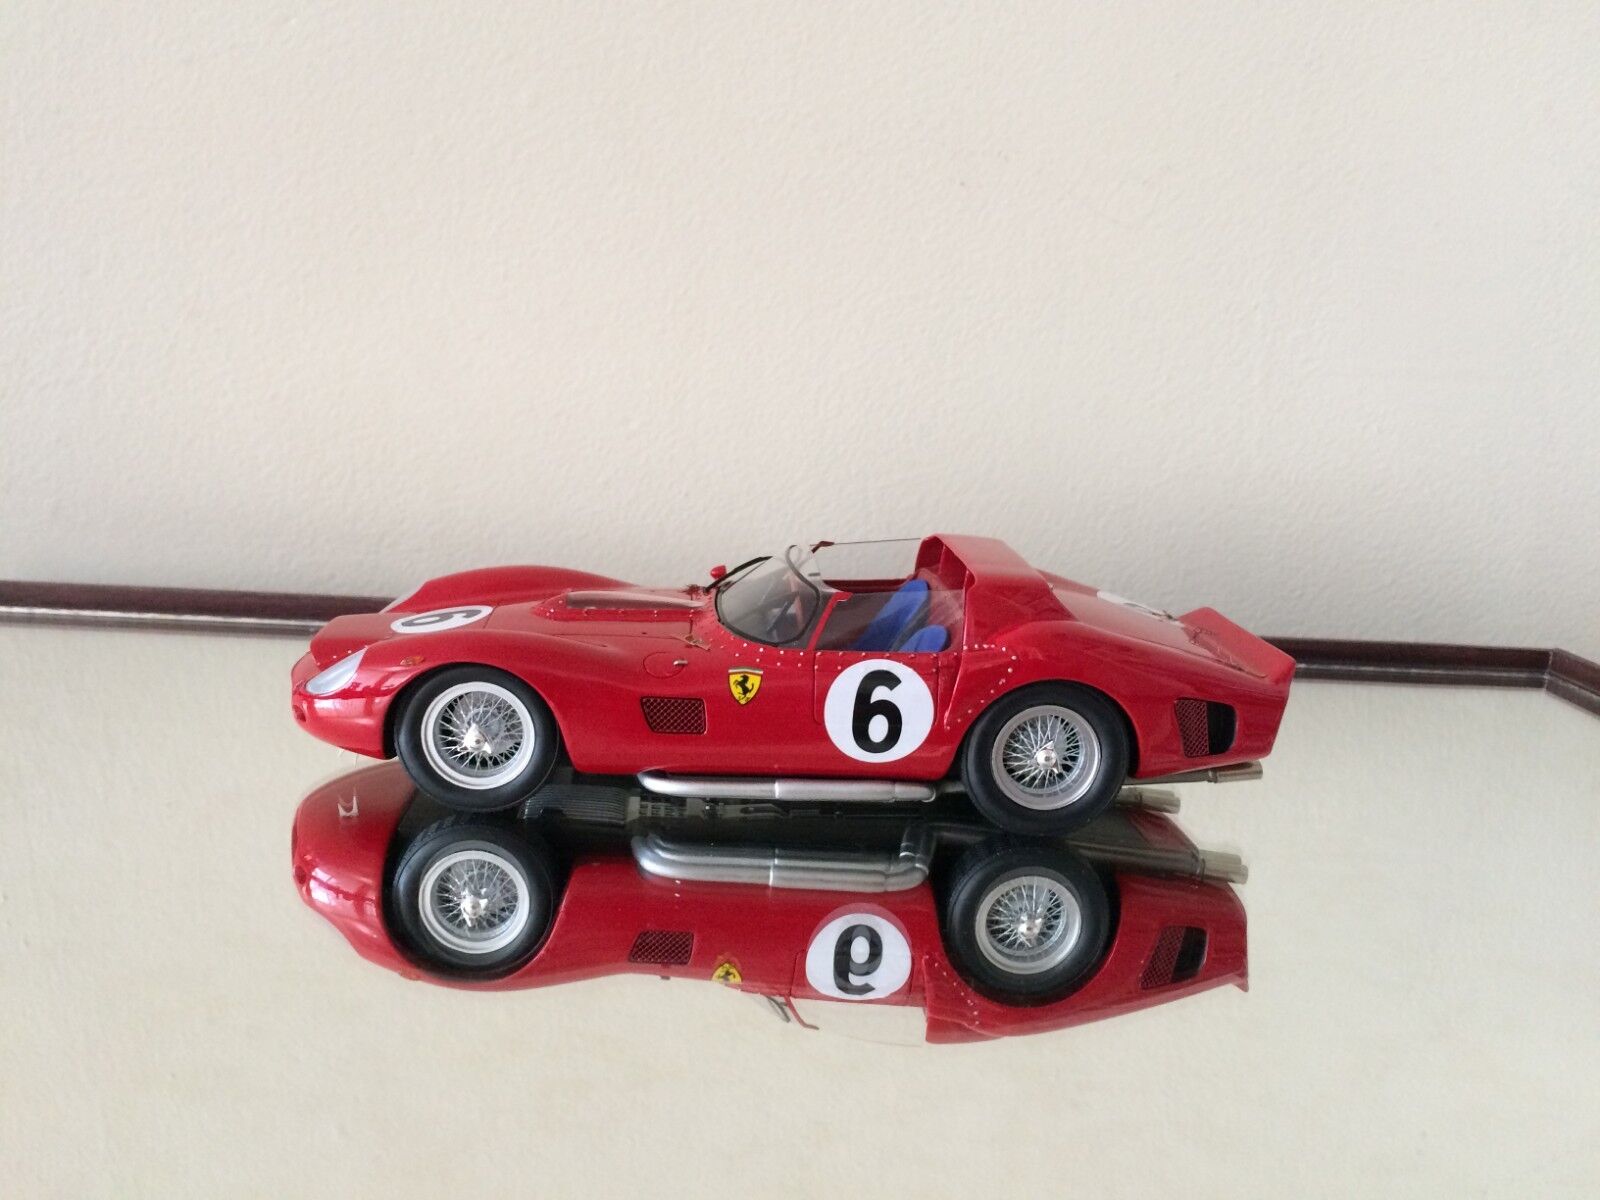 Ferrari 330 Tri/Lm Wallpapers